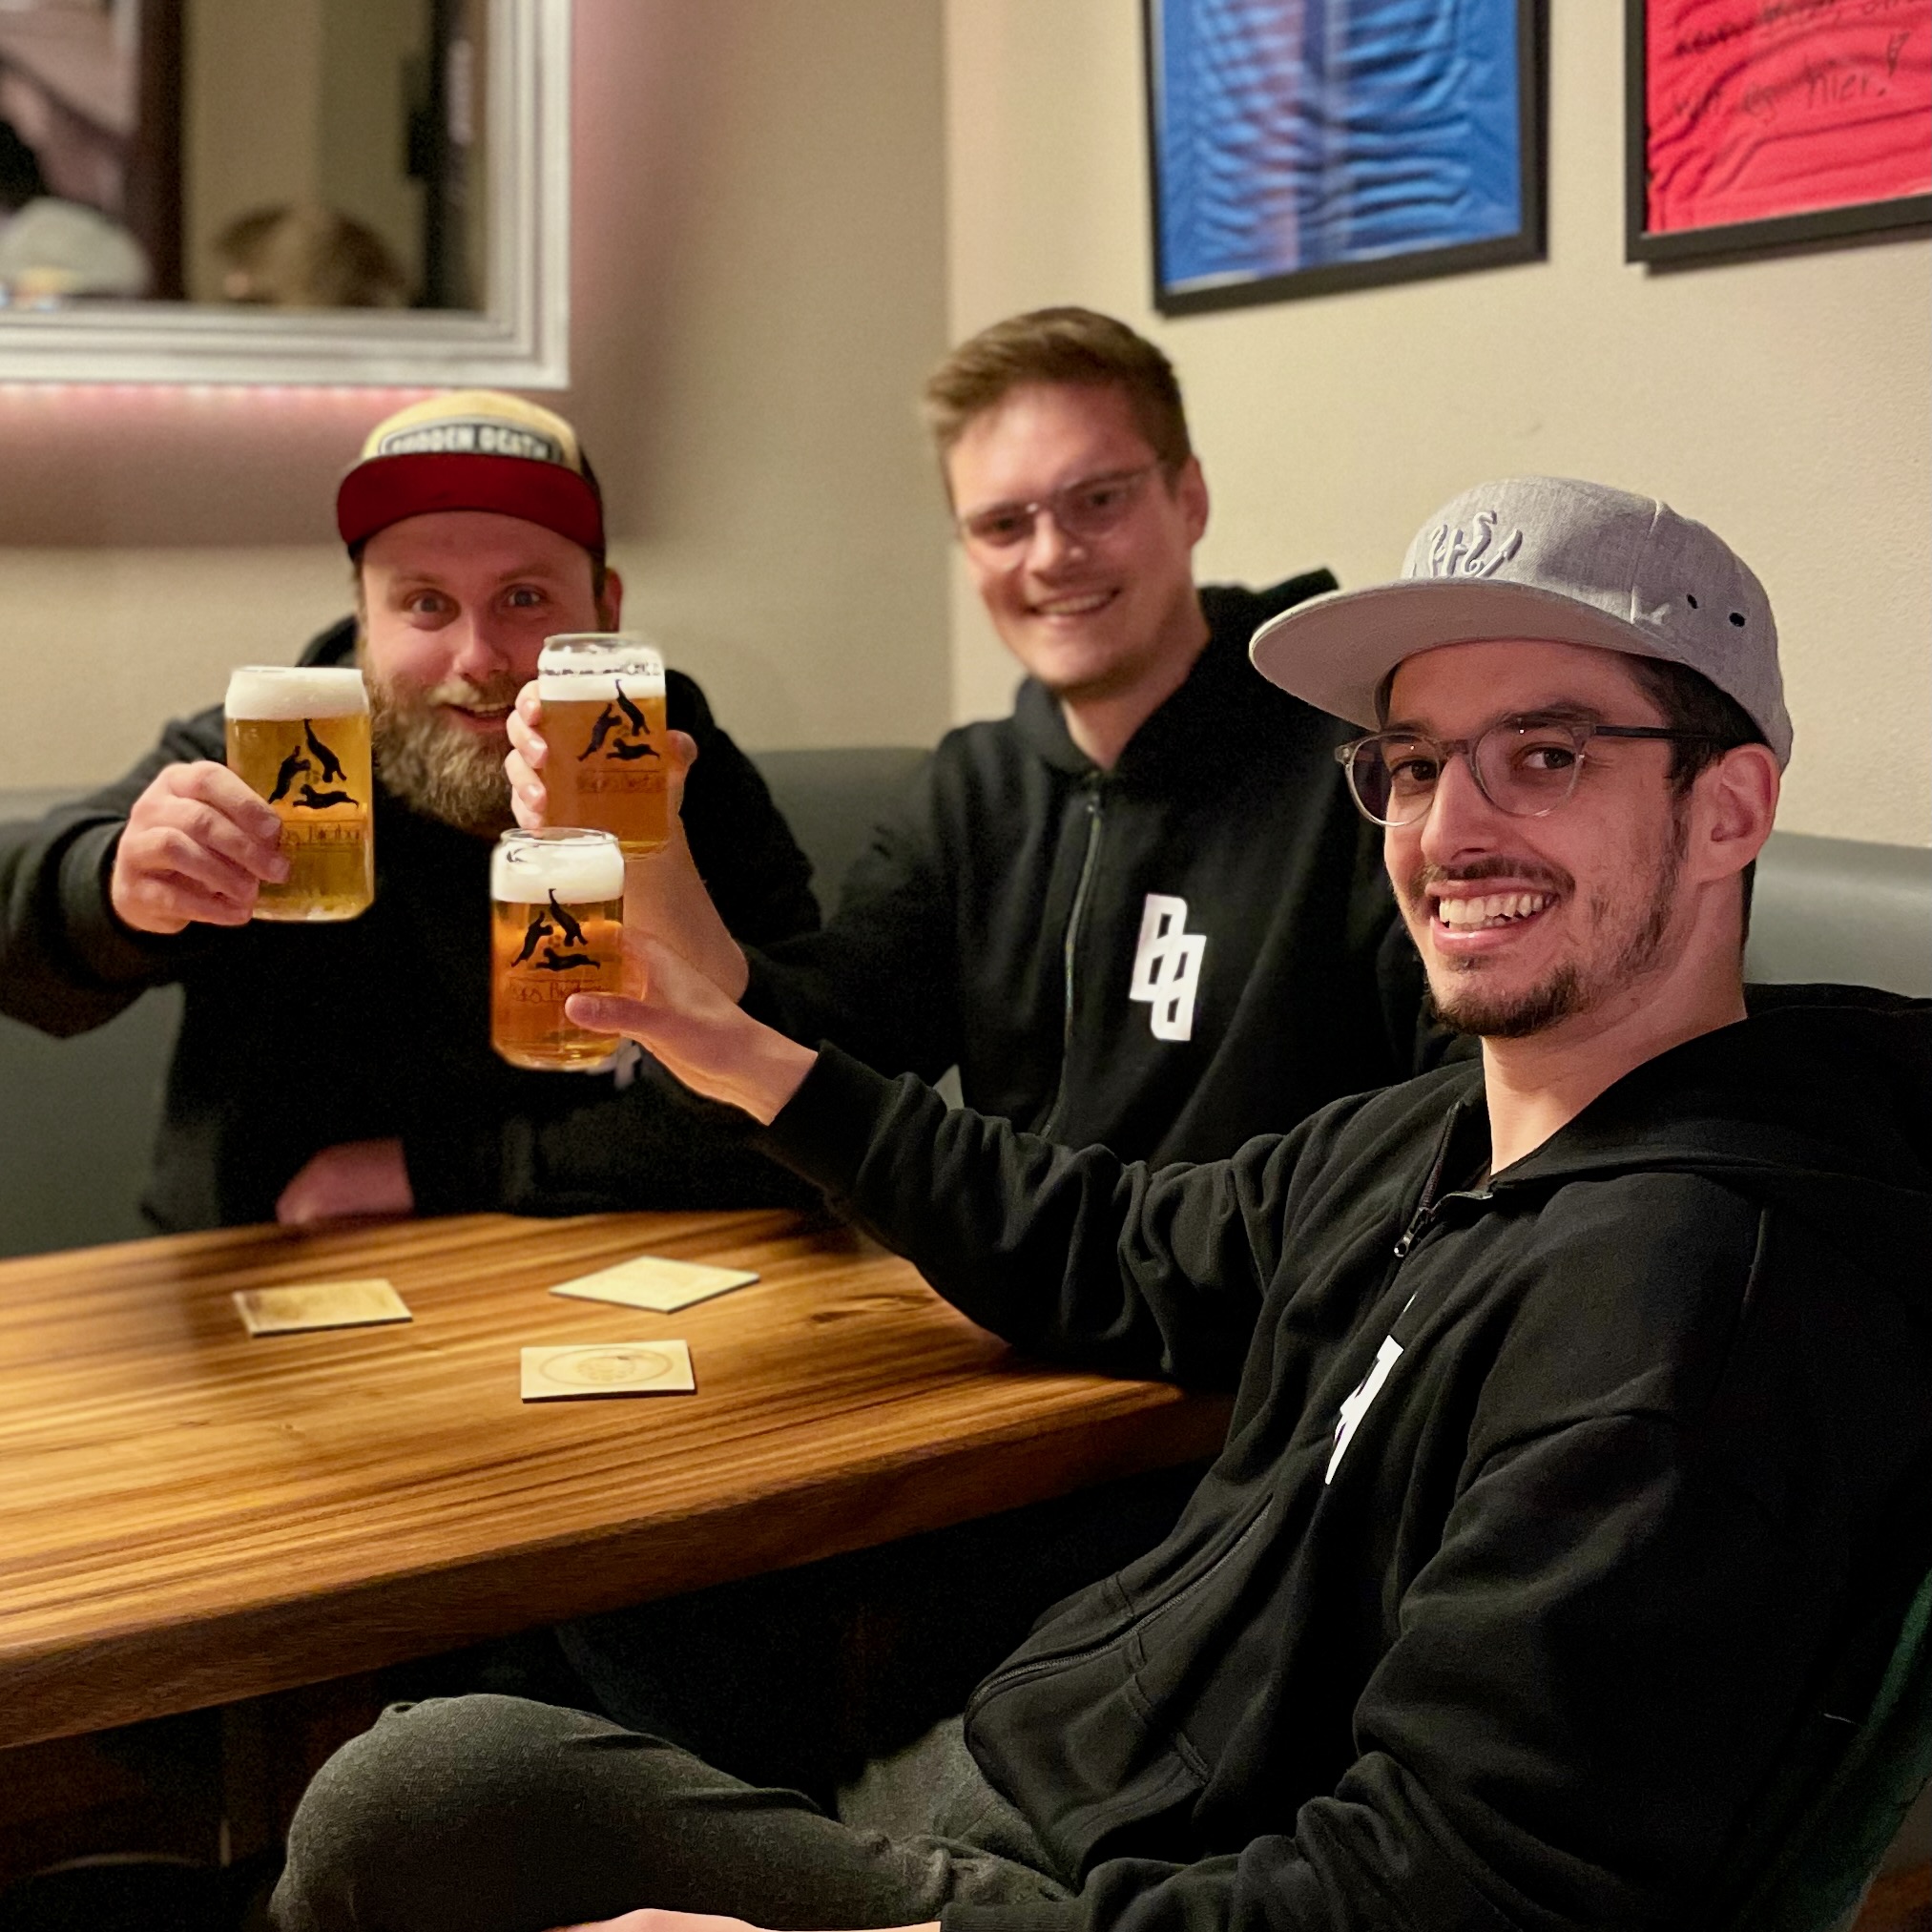 Hendrik, Markus und David mit frisch gezapftem Hafenviertel Helles in der Hops Bierbar.